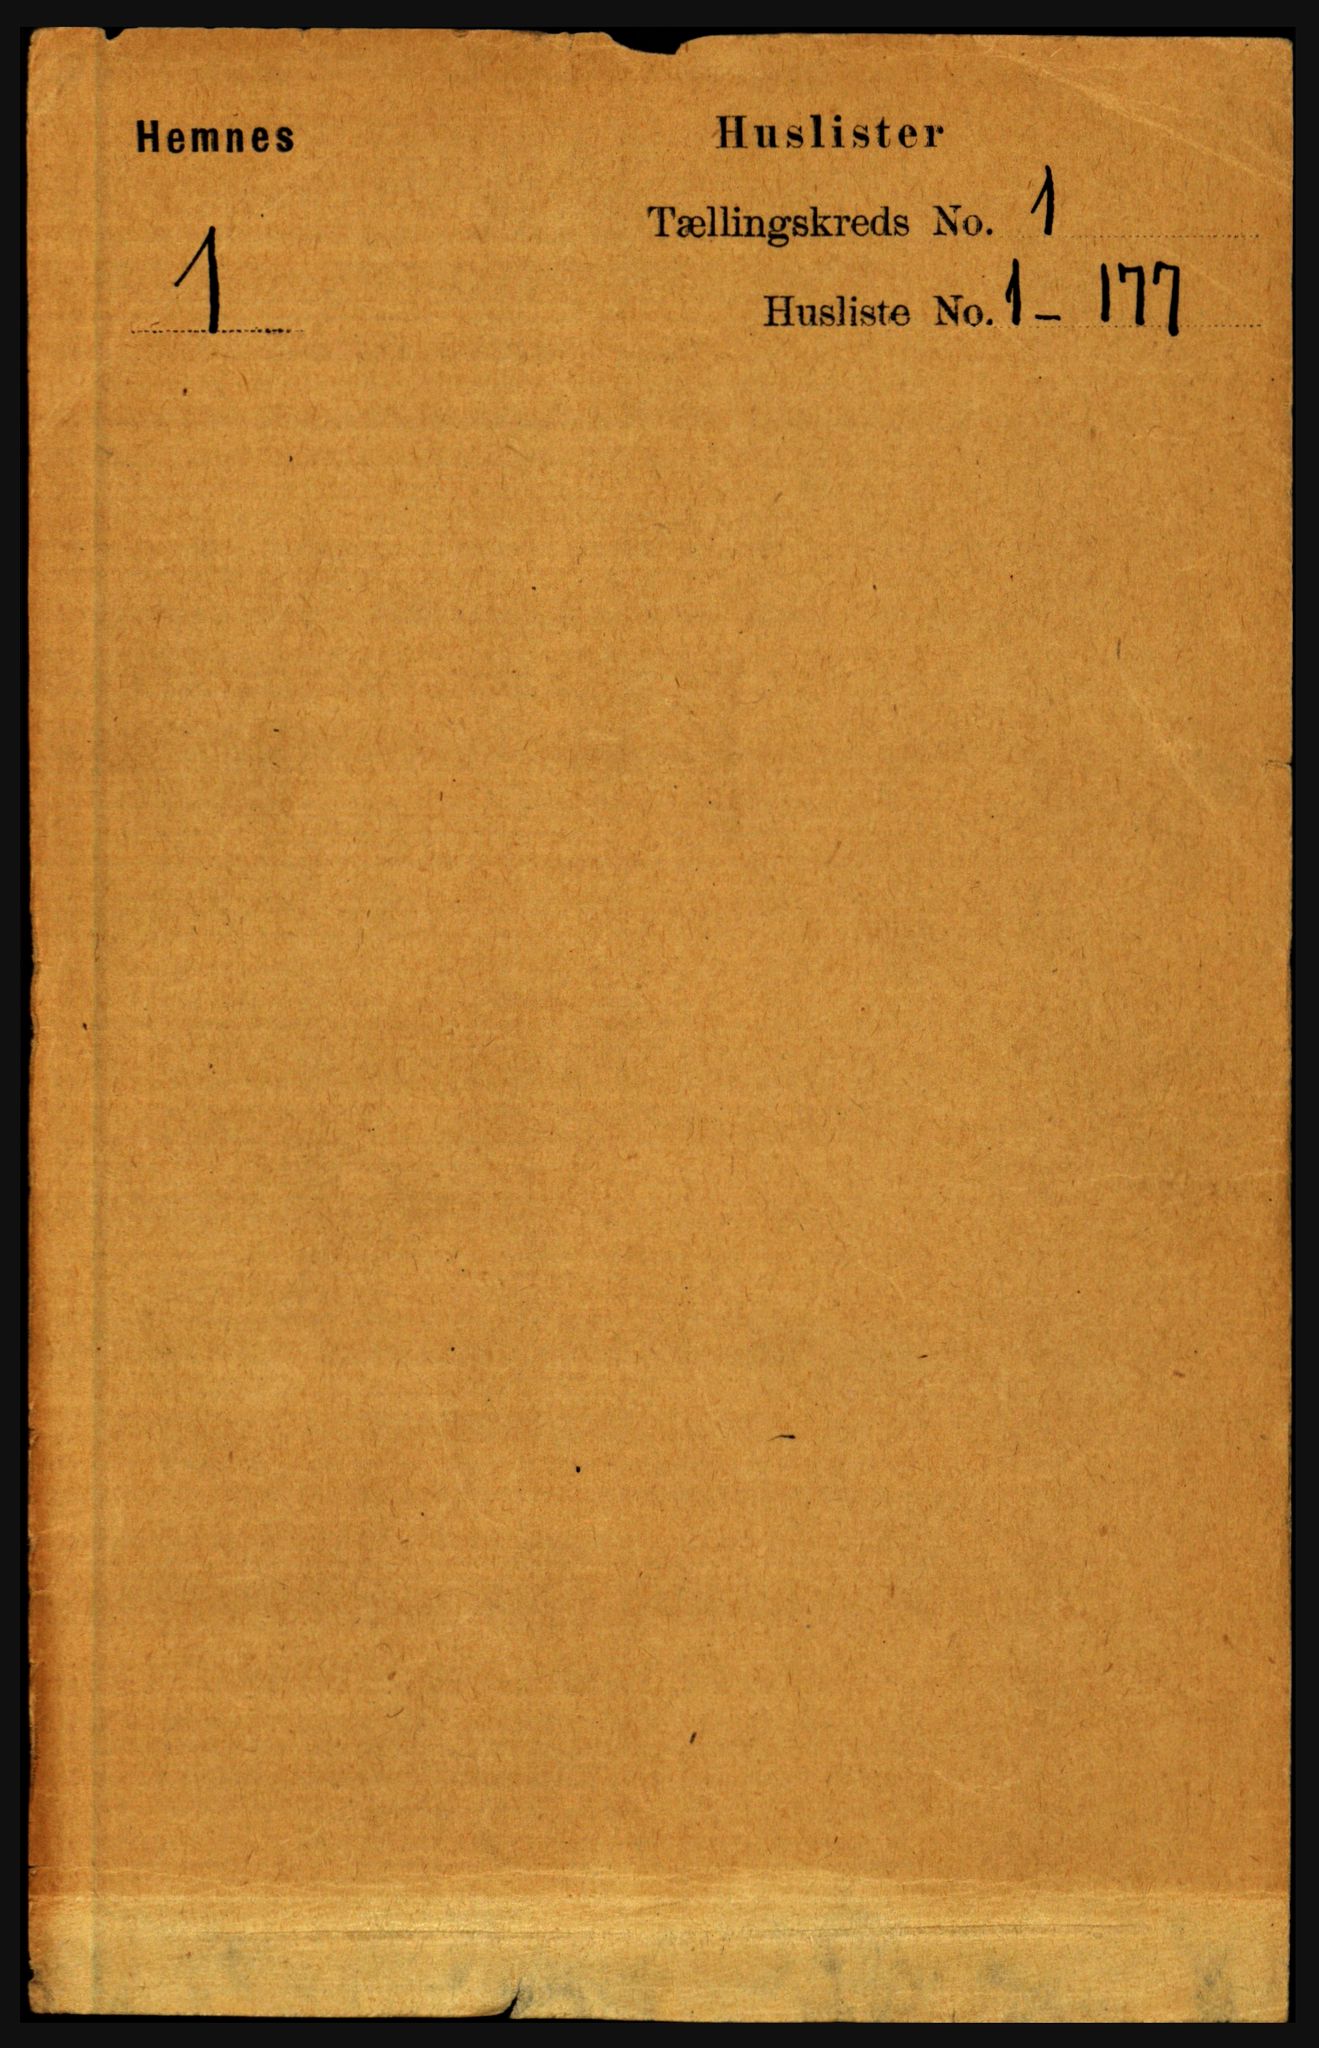 RA, Folketelling 1891 for 1832 Hemnes herred, 1891, s. 31